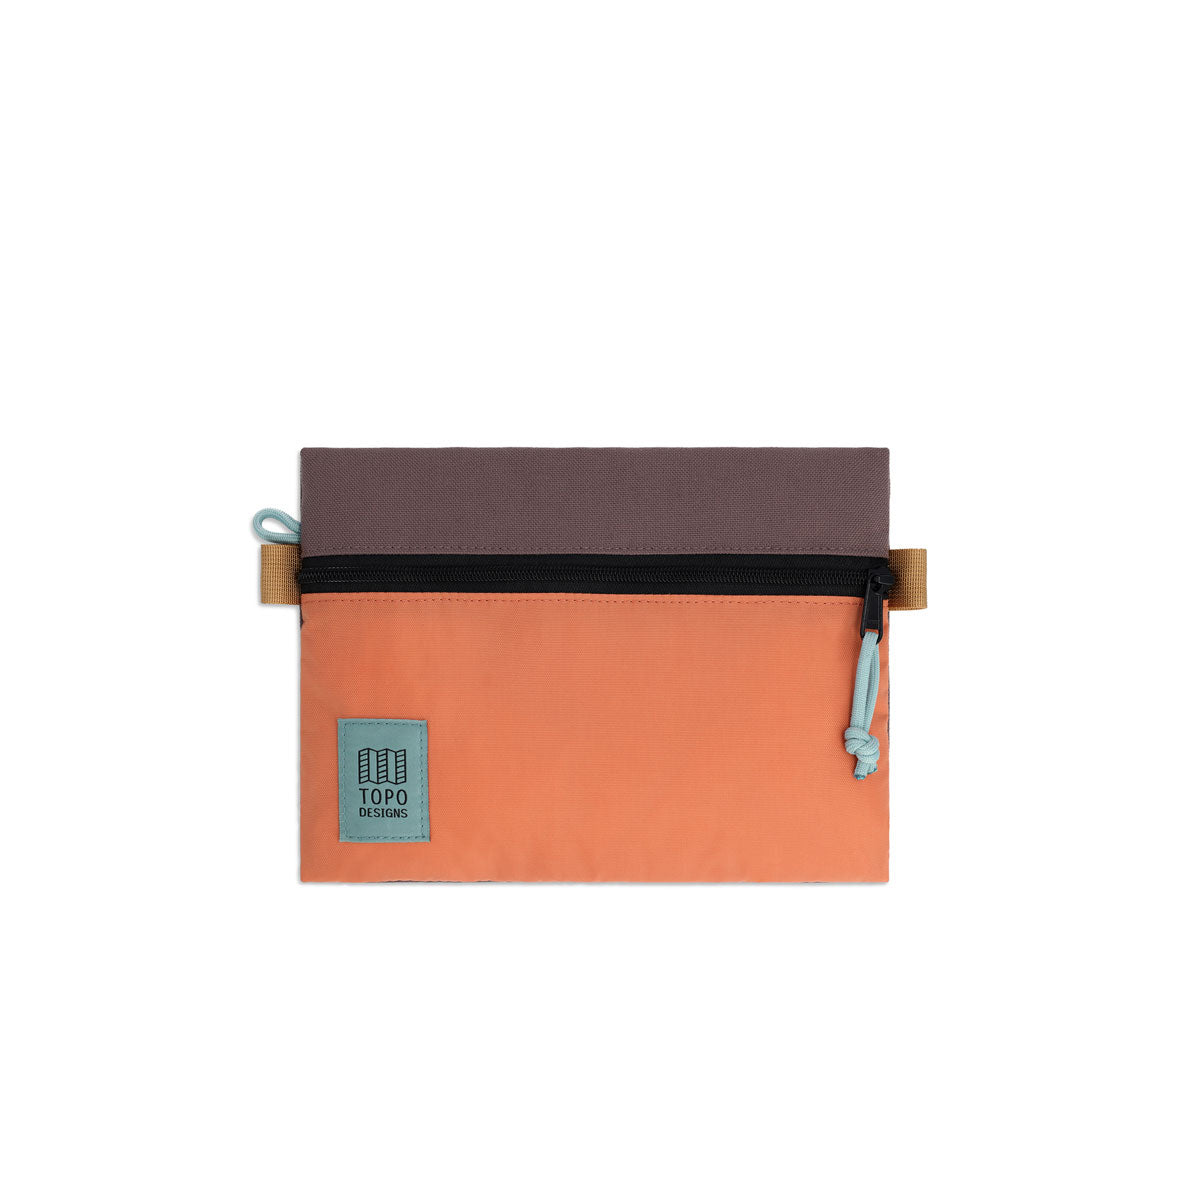 Topo Designs : Accessory Bag : Coral/Peppercorn